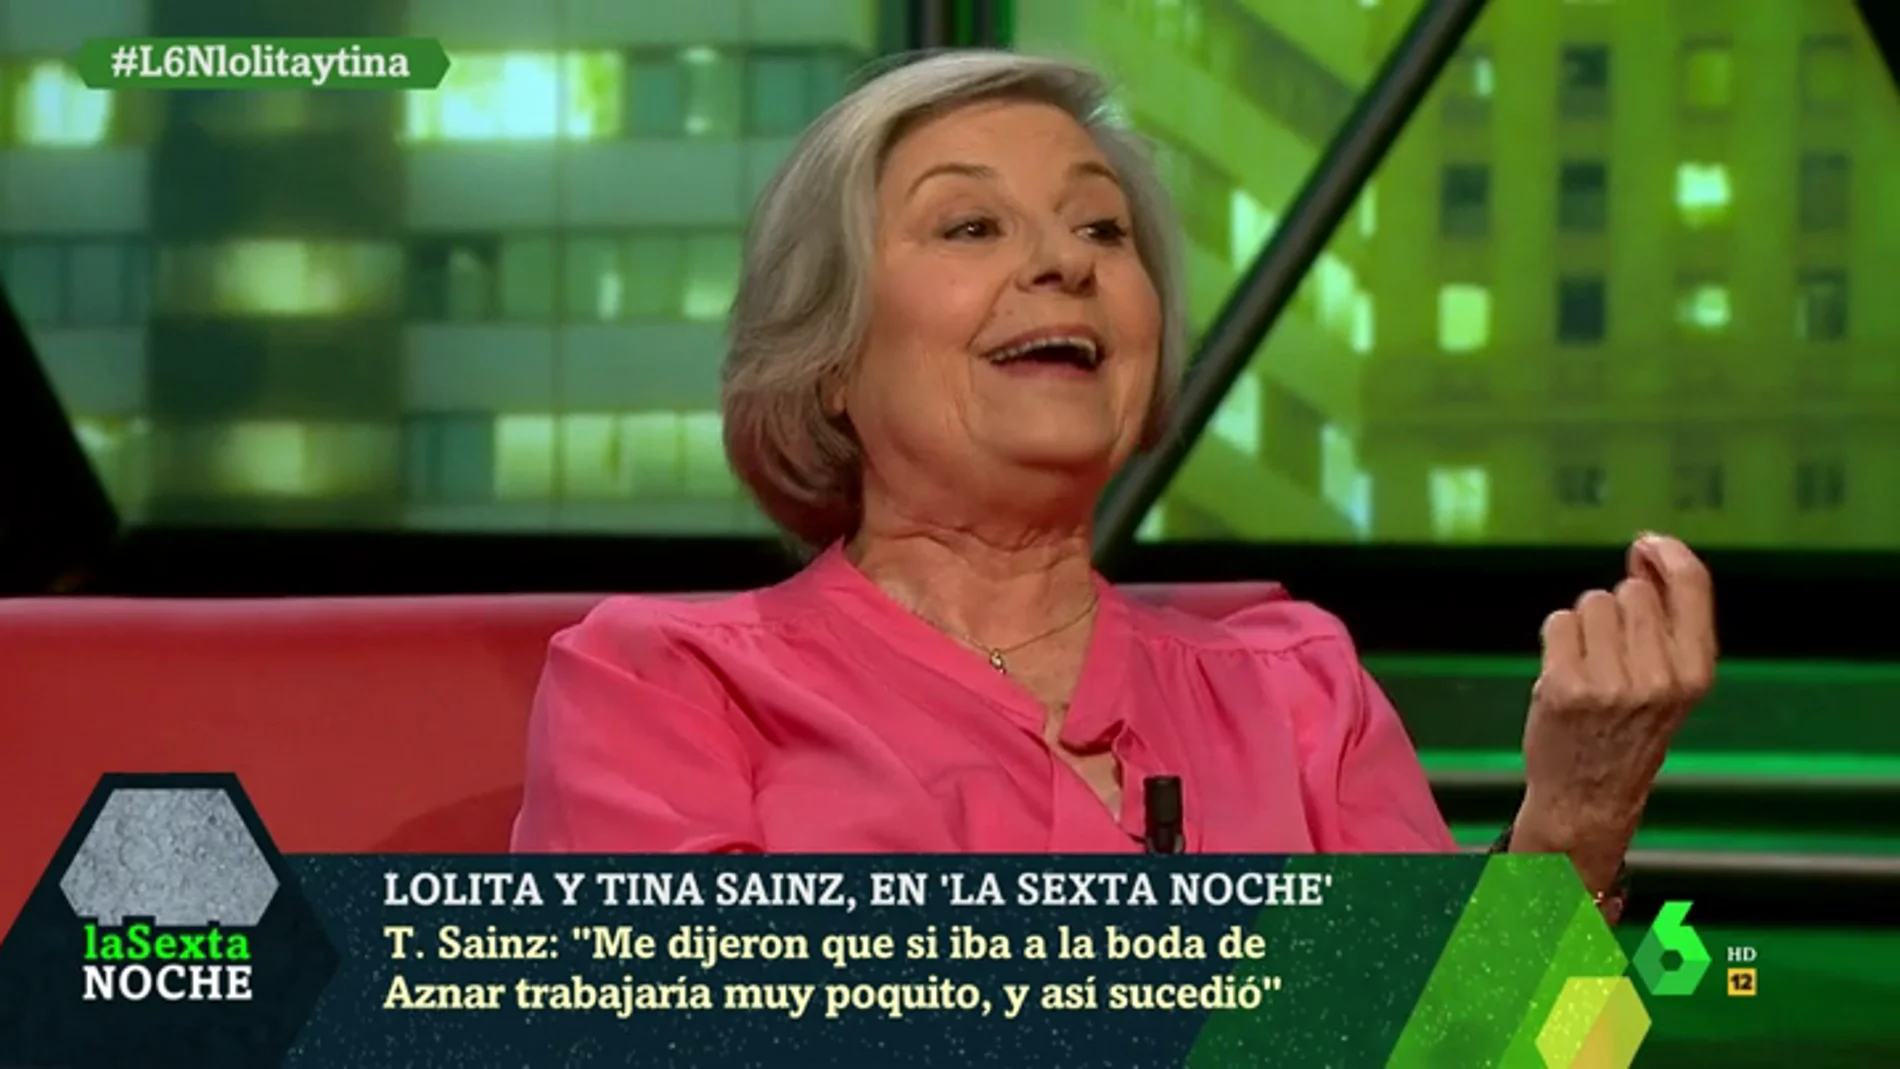 Tina Sáinz: "Me dijeron que si iba a la boda de Aznar trabjaaría muy poquito, y así sucedió"